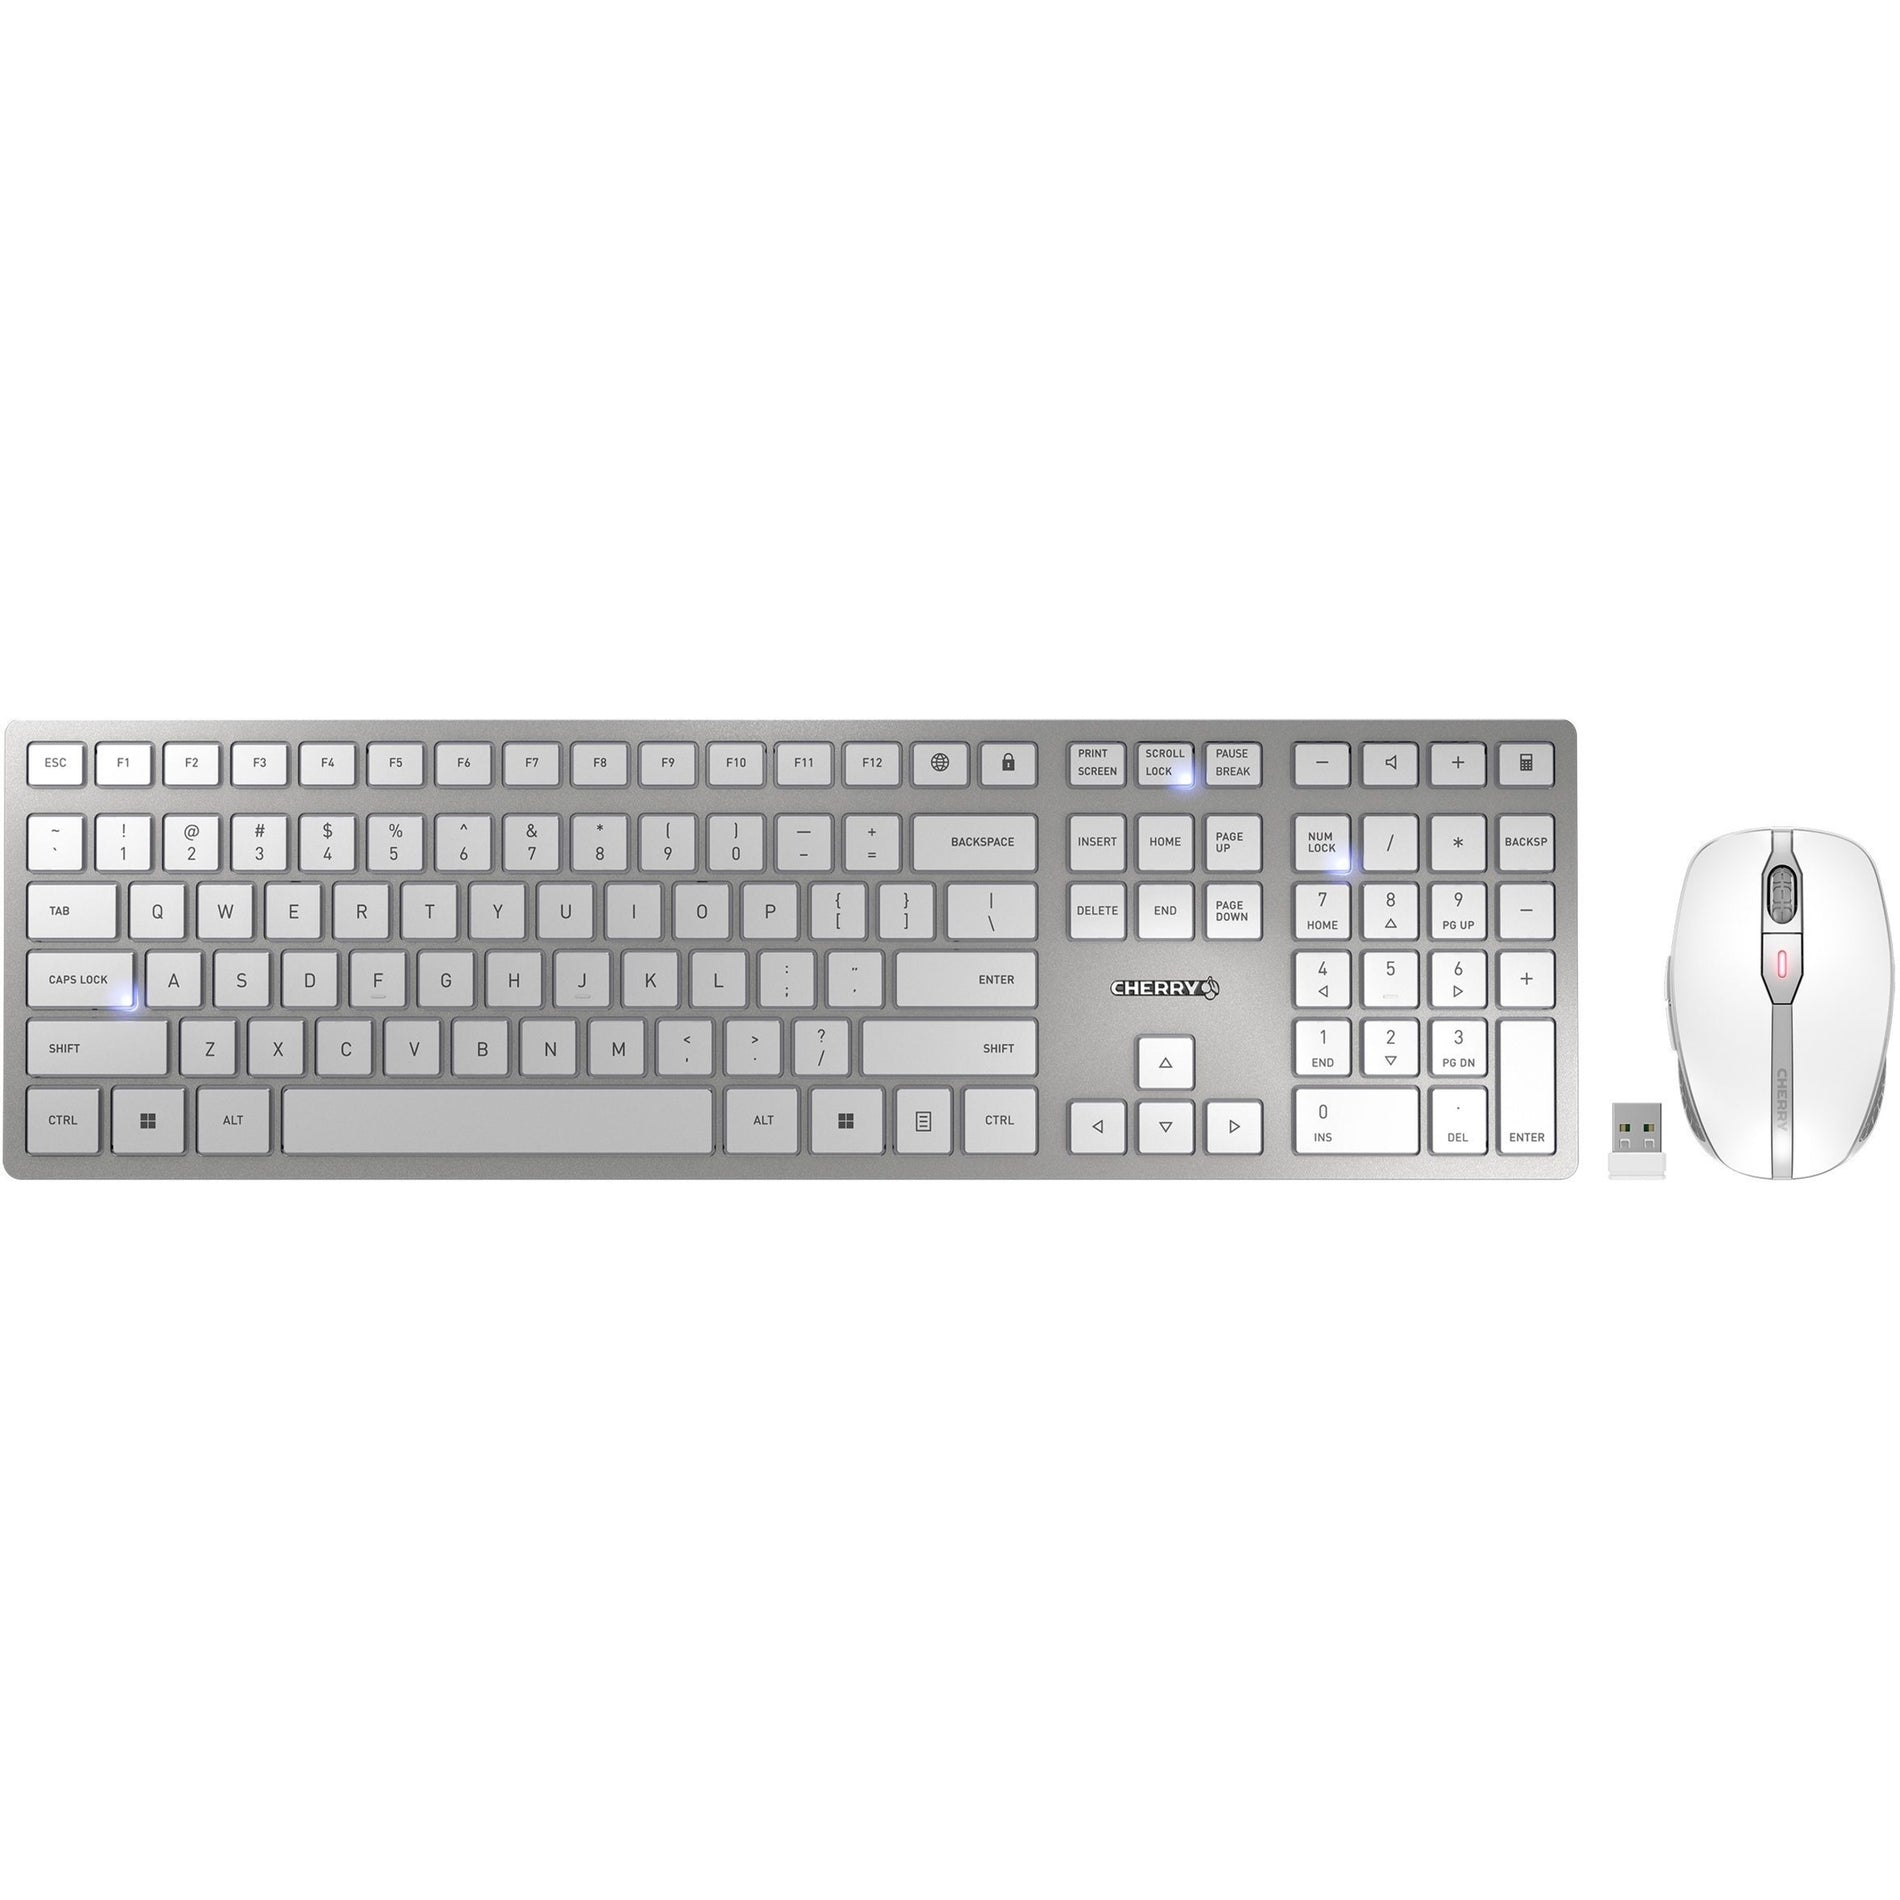 CHERRY JD-9100US-1 DW 9100 SLIM Combo de teclado y ratón inalámbricos recargables de escritorio plata/blanco USB Marca: CEREZA